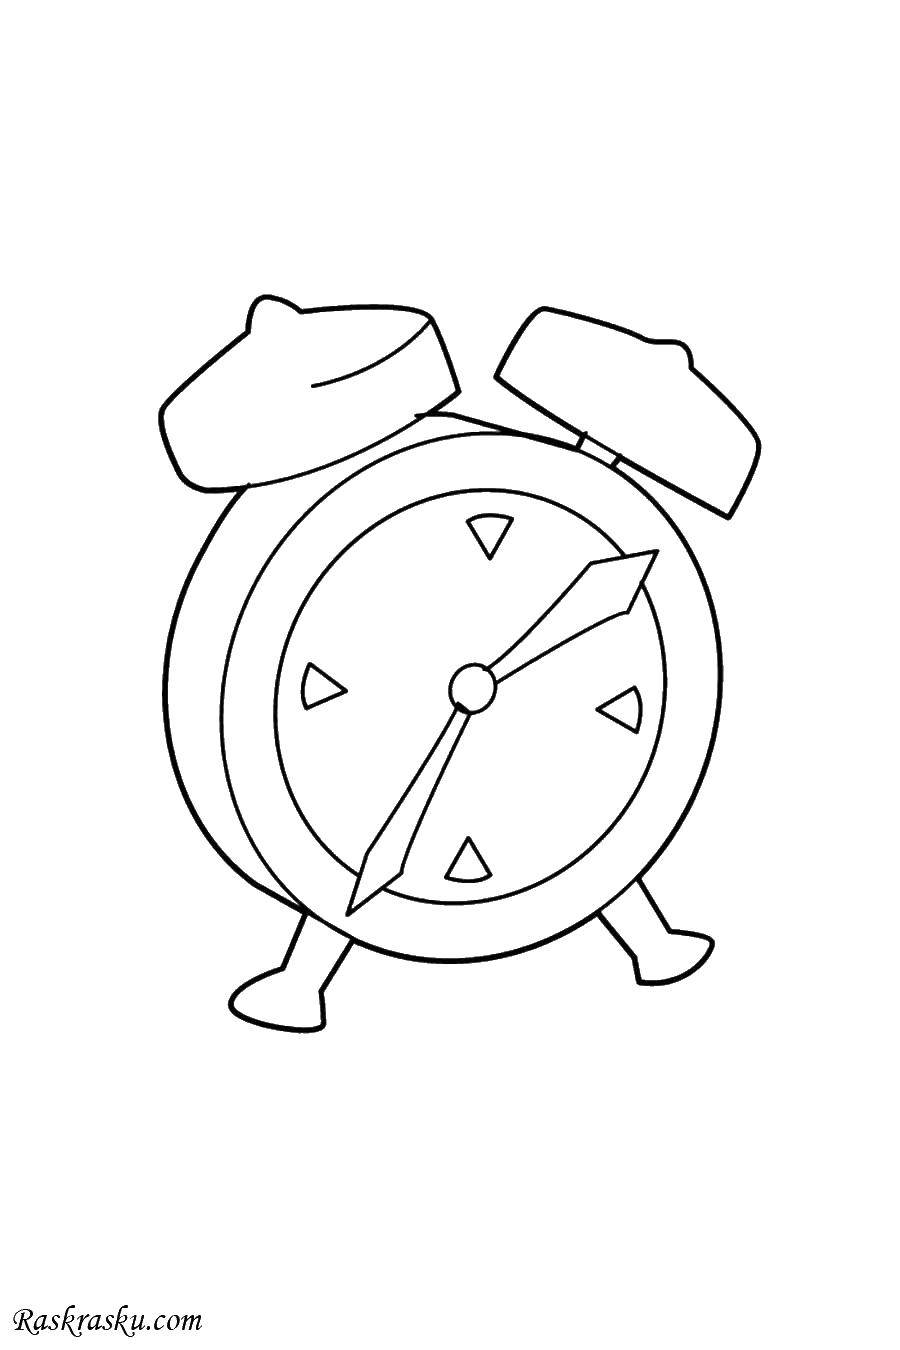 Название: Раскраска Будильник. Категория: Часы. Теги: часы, будильник, стрелки.